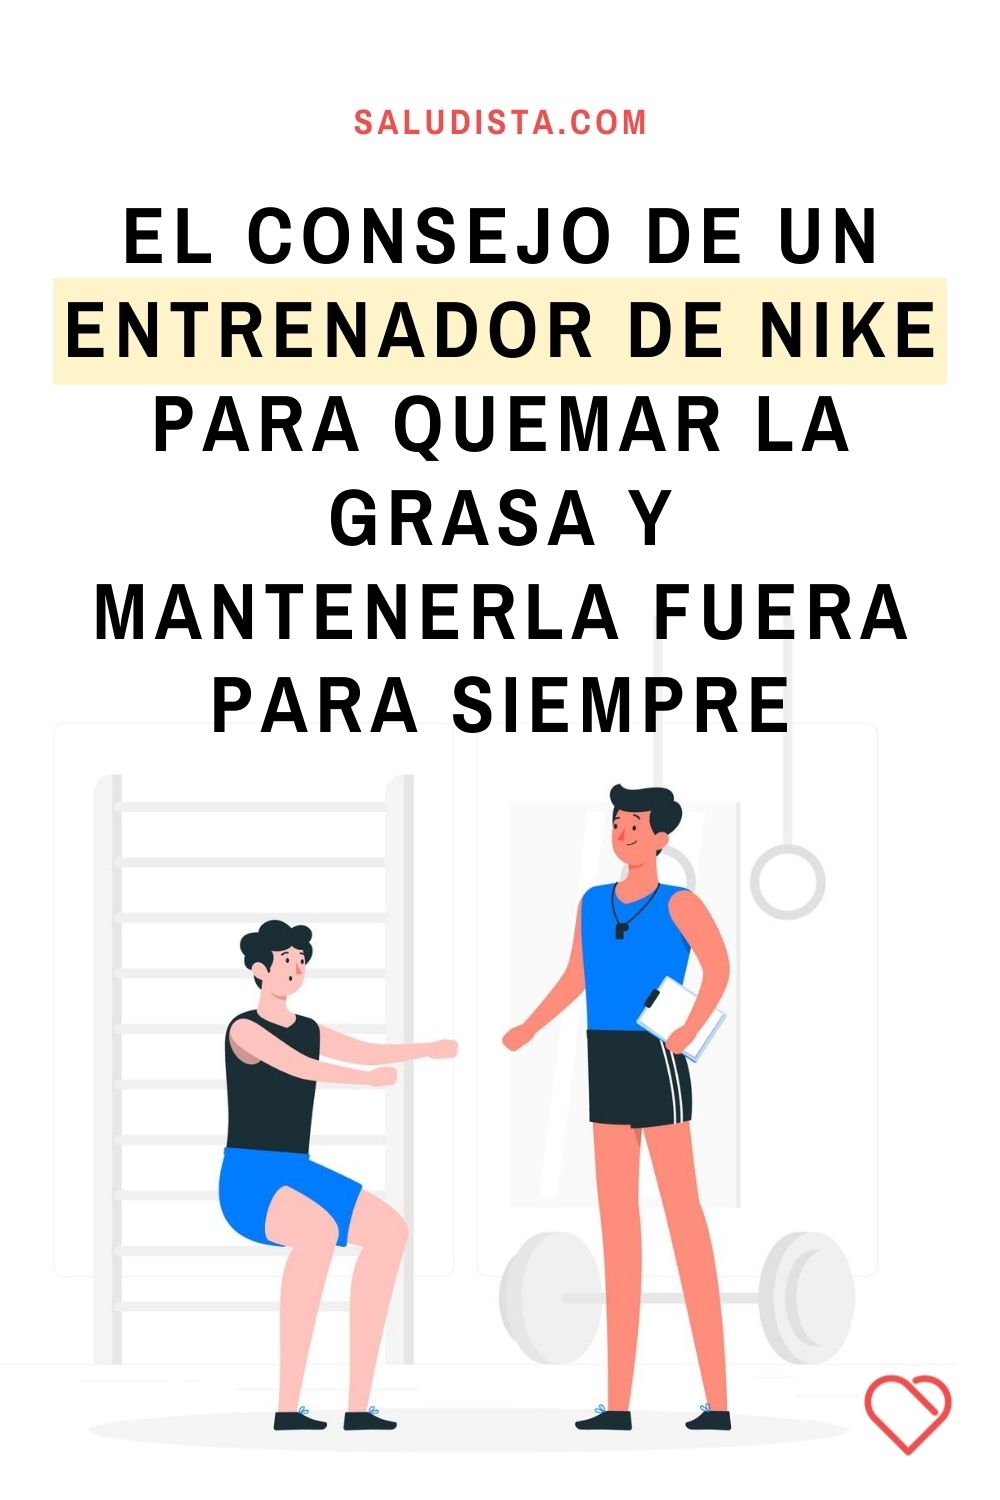 El consejo de un entrenador de Nike para quemar la grasa y mantenerla fuera para siempre